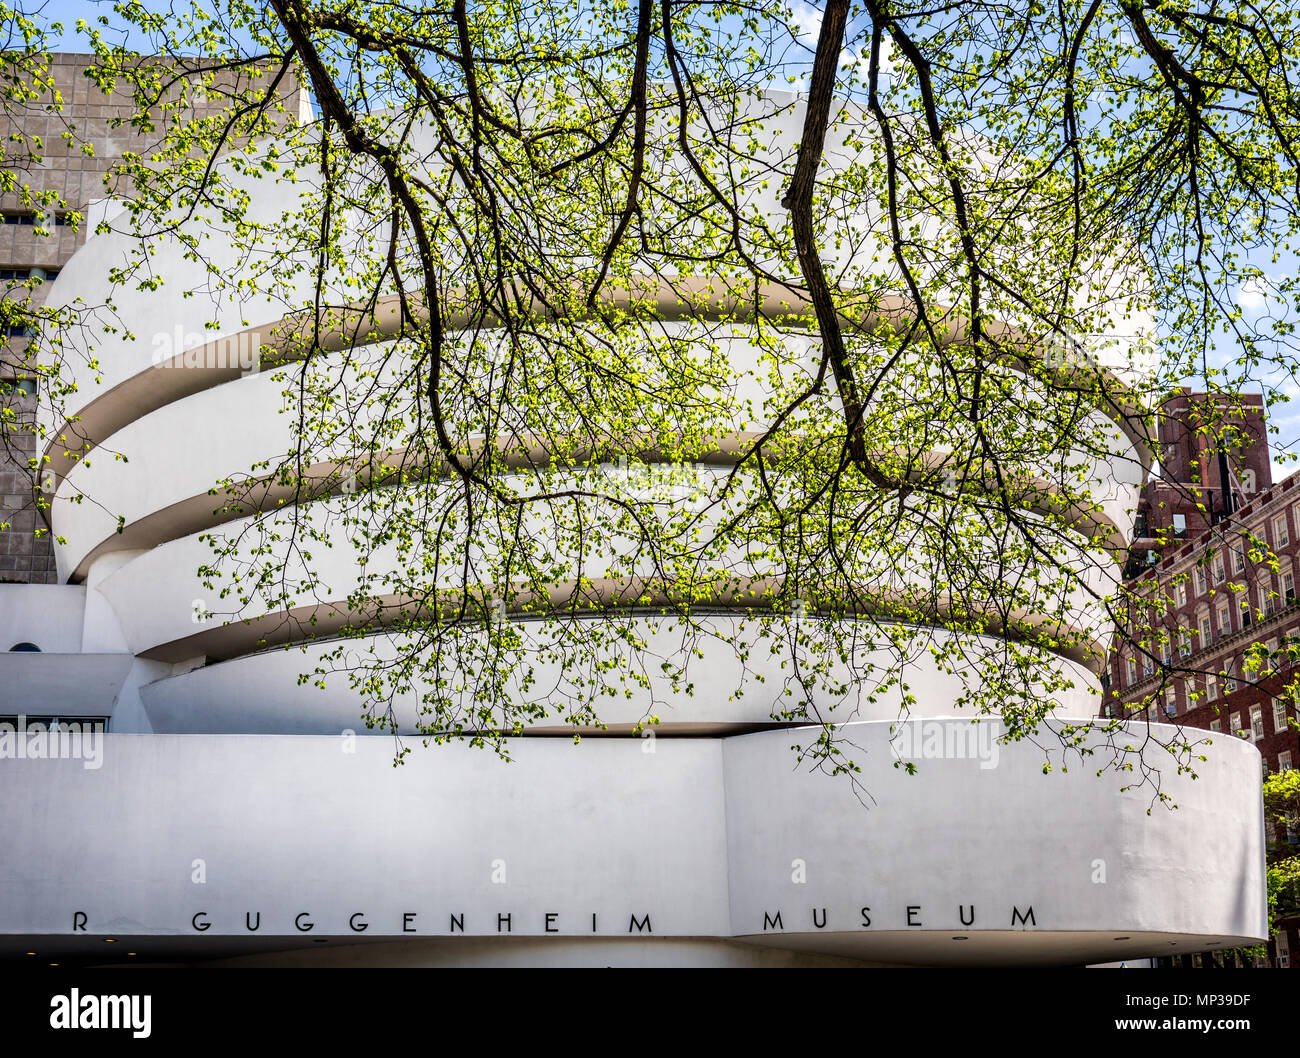 Il Guggenheim Museum di arte moderna vicino al Central Park di New York City, Stati Uniti d'America. Foto Stock